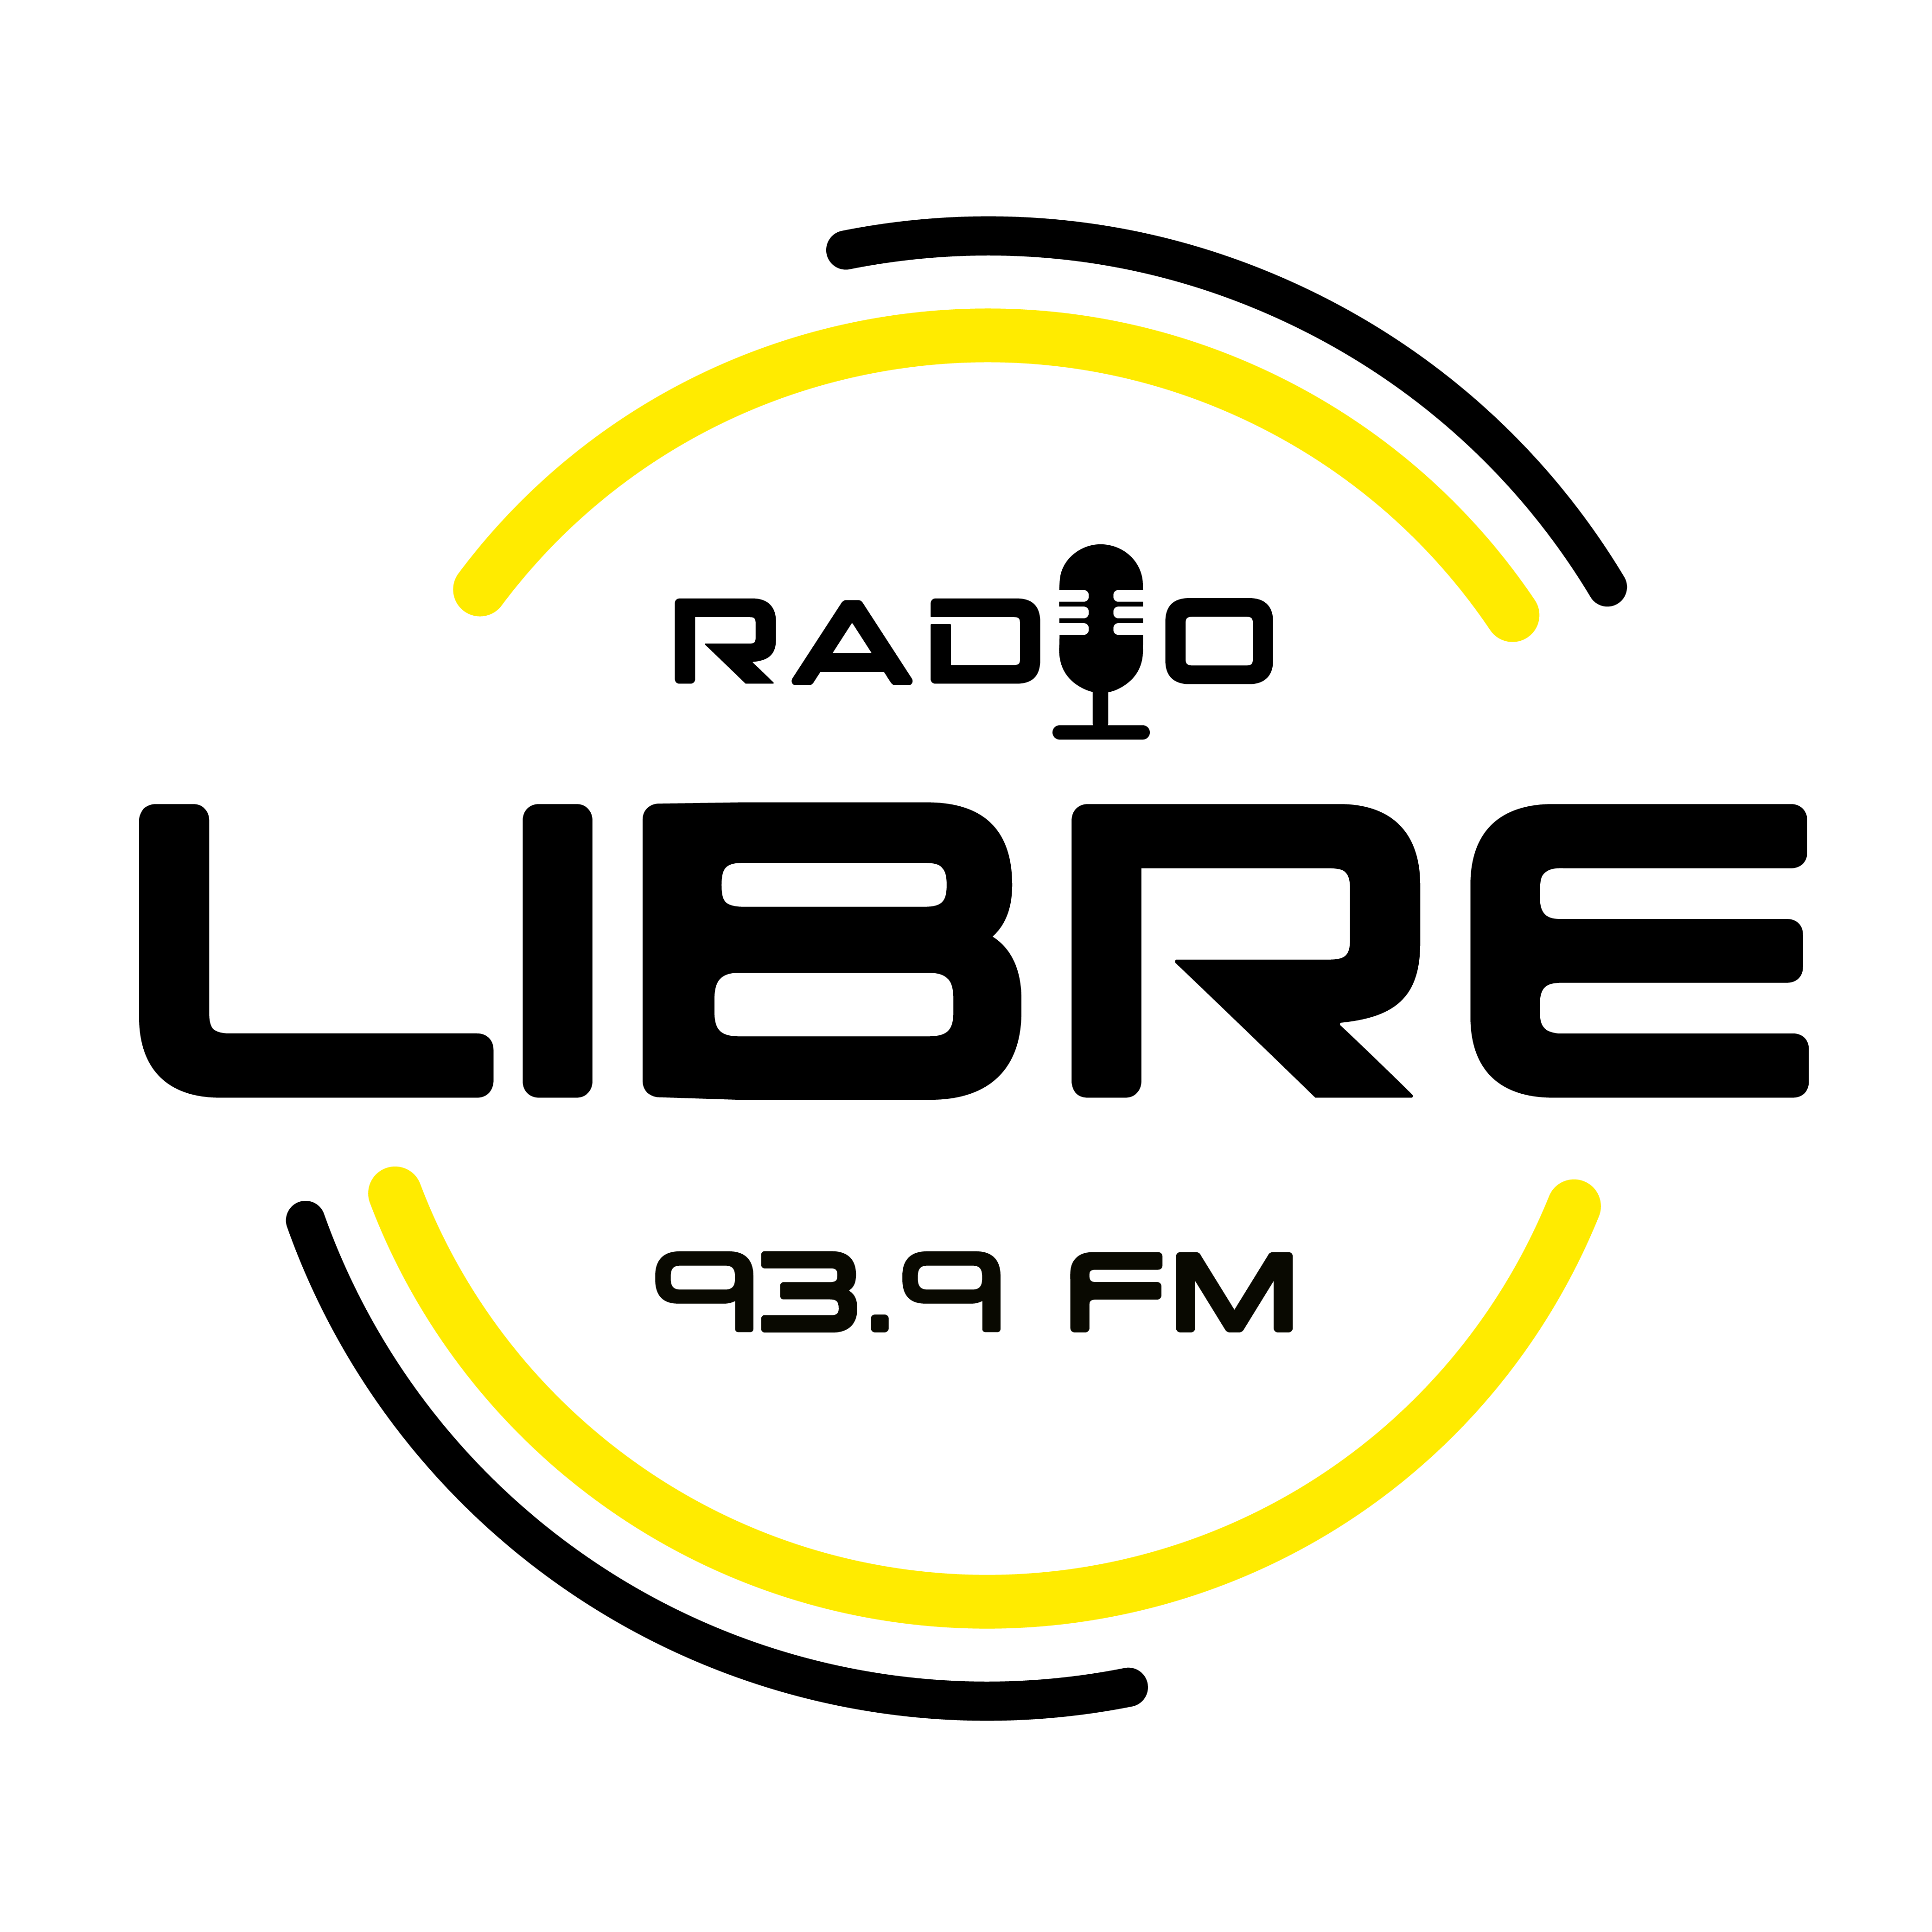 Radio Libre